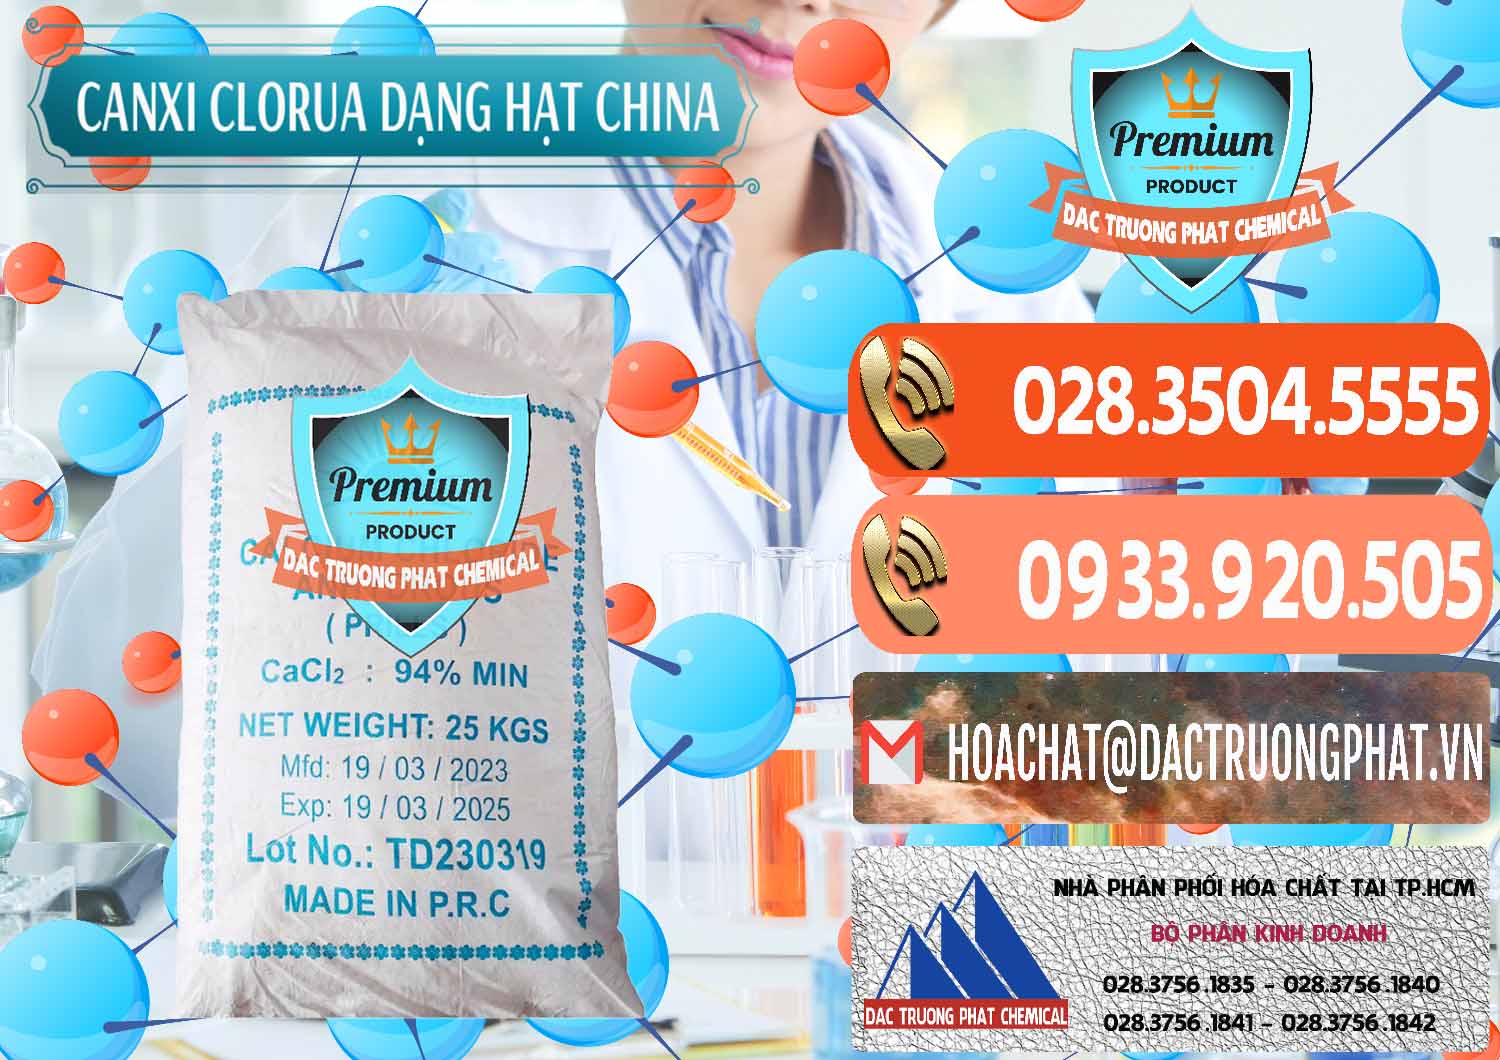 Công ty cung ứng _ bán CaCl2 – Canxi Clorua 94% Dạng Hạt Trung Quốc China - 0373 - Công ty chuyên nhập khẩu & cung cấp hóa chất tại TP.HCM - hoachatmientay.com